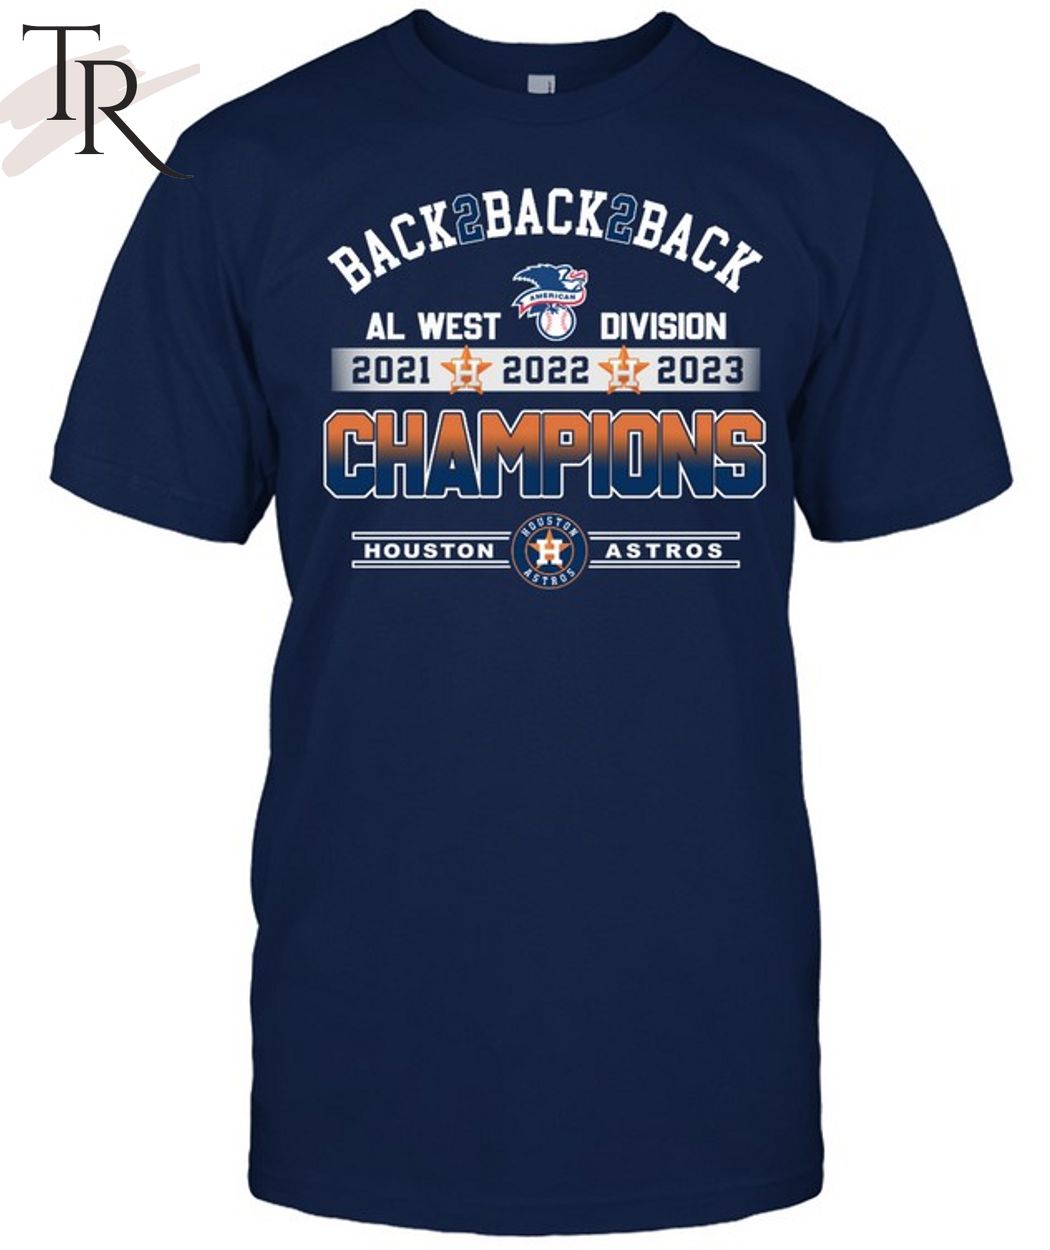 Back 2 Back 2 Back AL West Division 2021 2022 2023 Champions Houston Astros  T-Shirt - Torunstyle